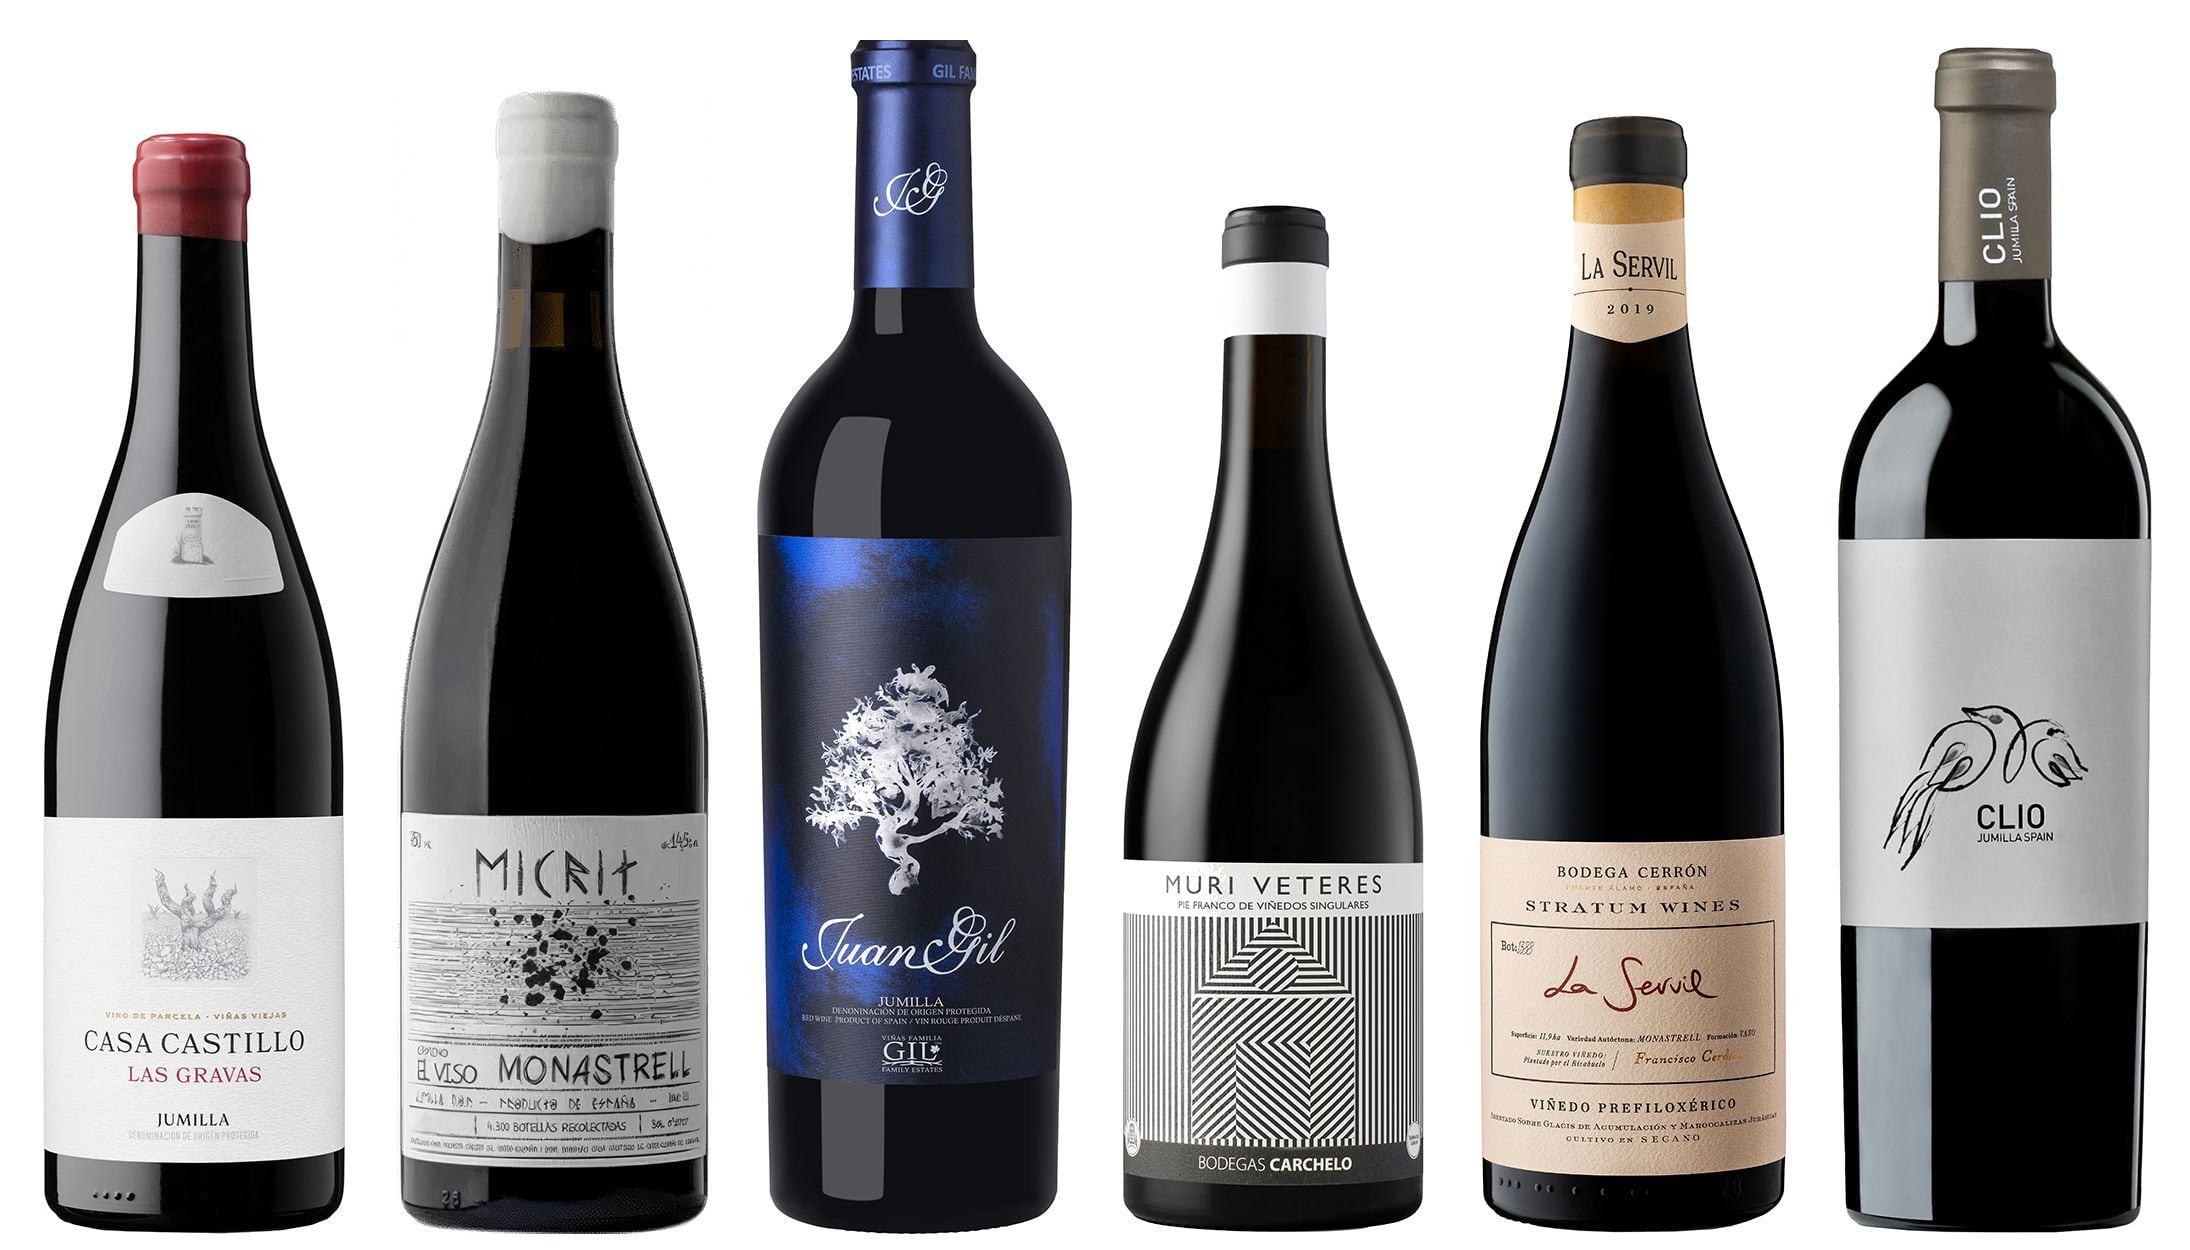 Seis grandes vinos (de la cara amable) de Jumilla al alcance del consumidor medio